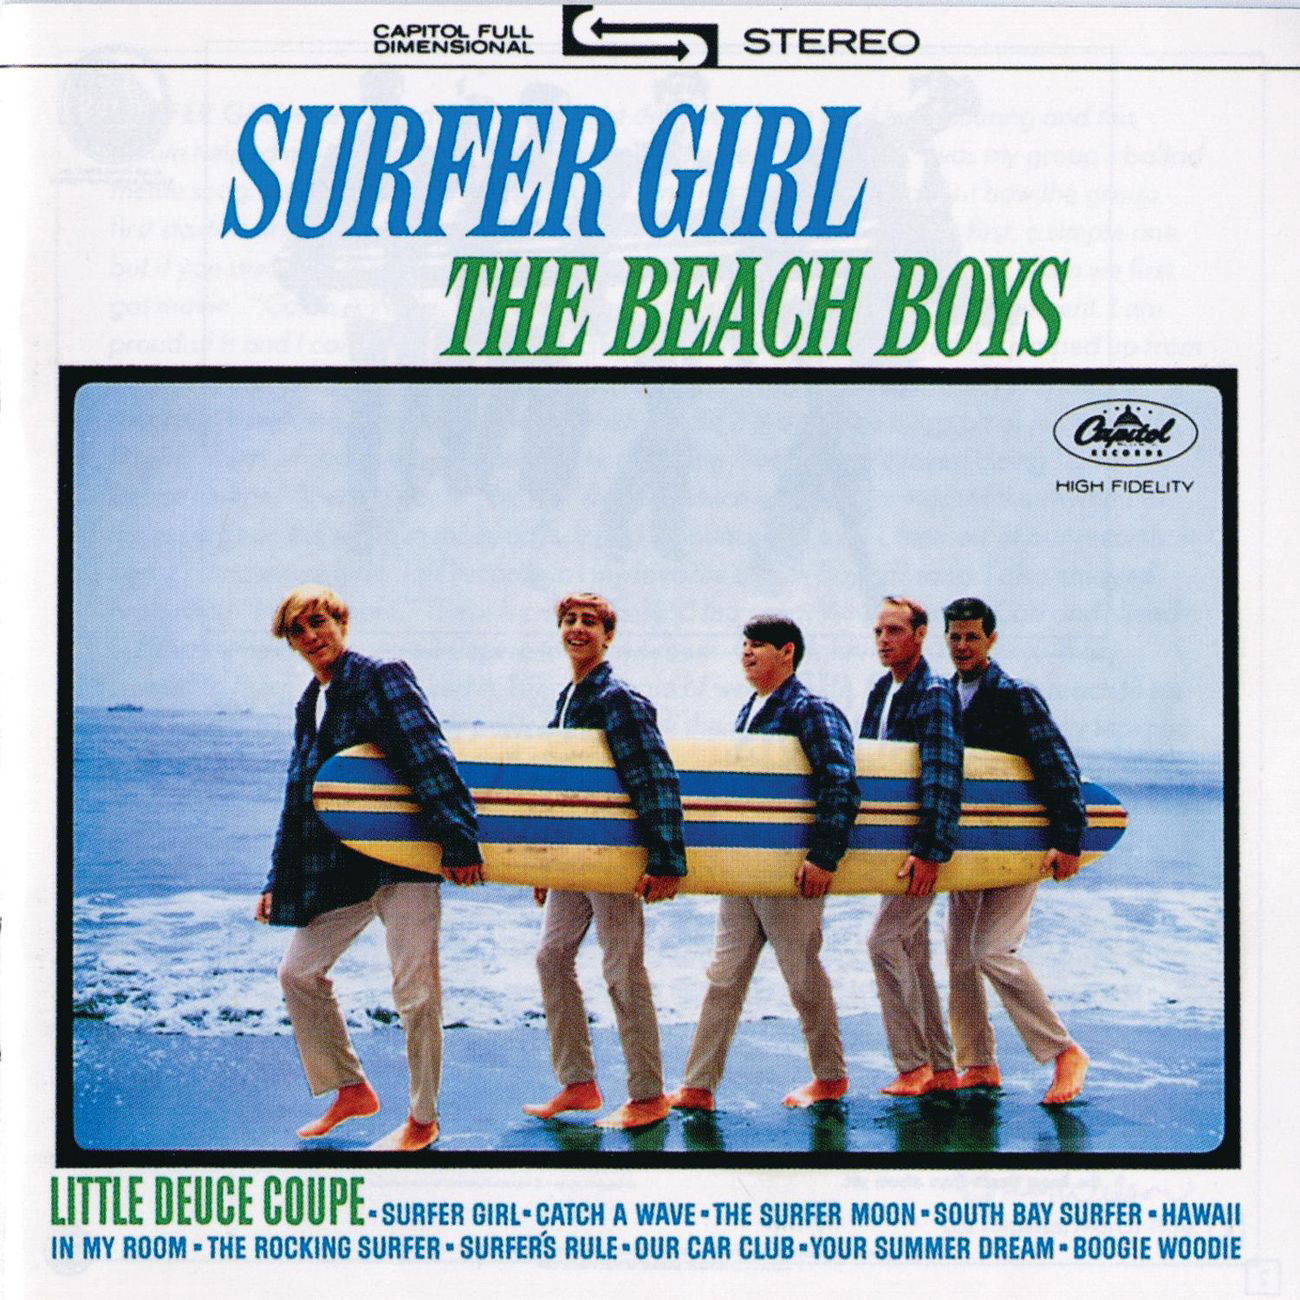 The Beach Boys – Surfer Girl (Remastered)【44.1kHz／16bit】意大利区-OppsUpro音乐帝国